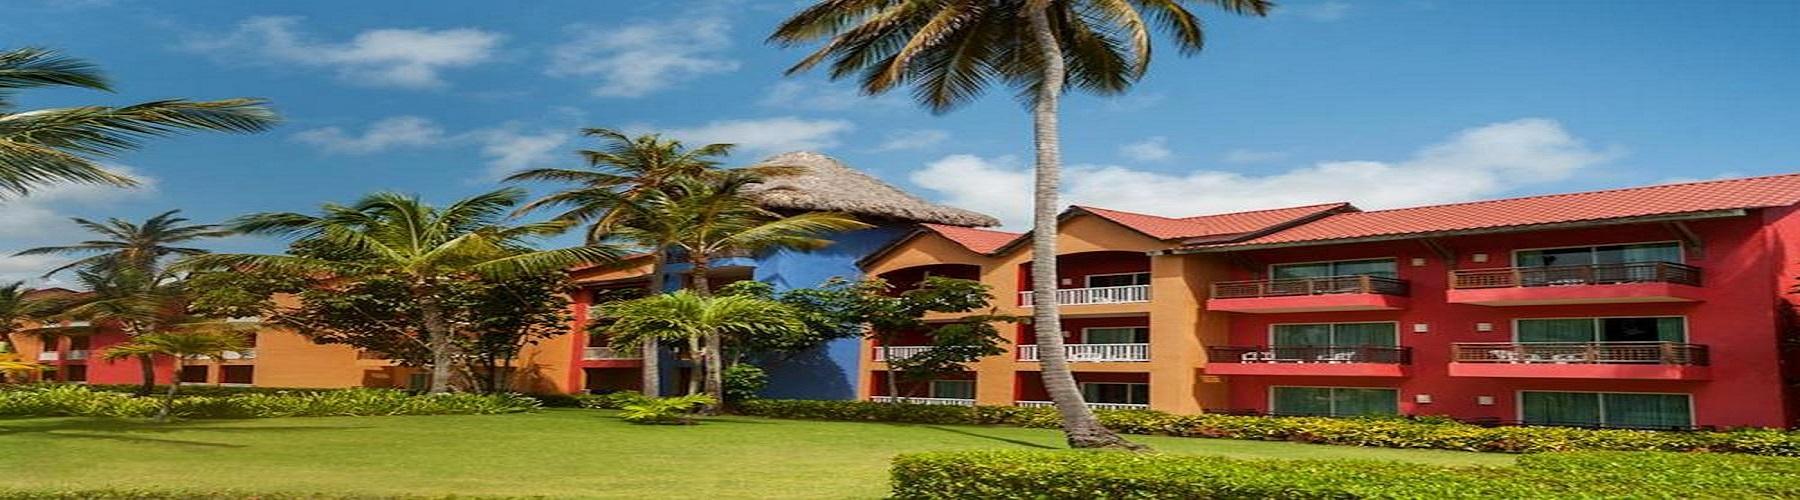 Отель для взрослых Punta Cana Princess 5*